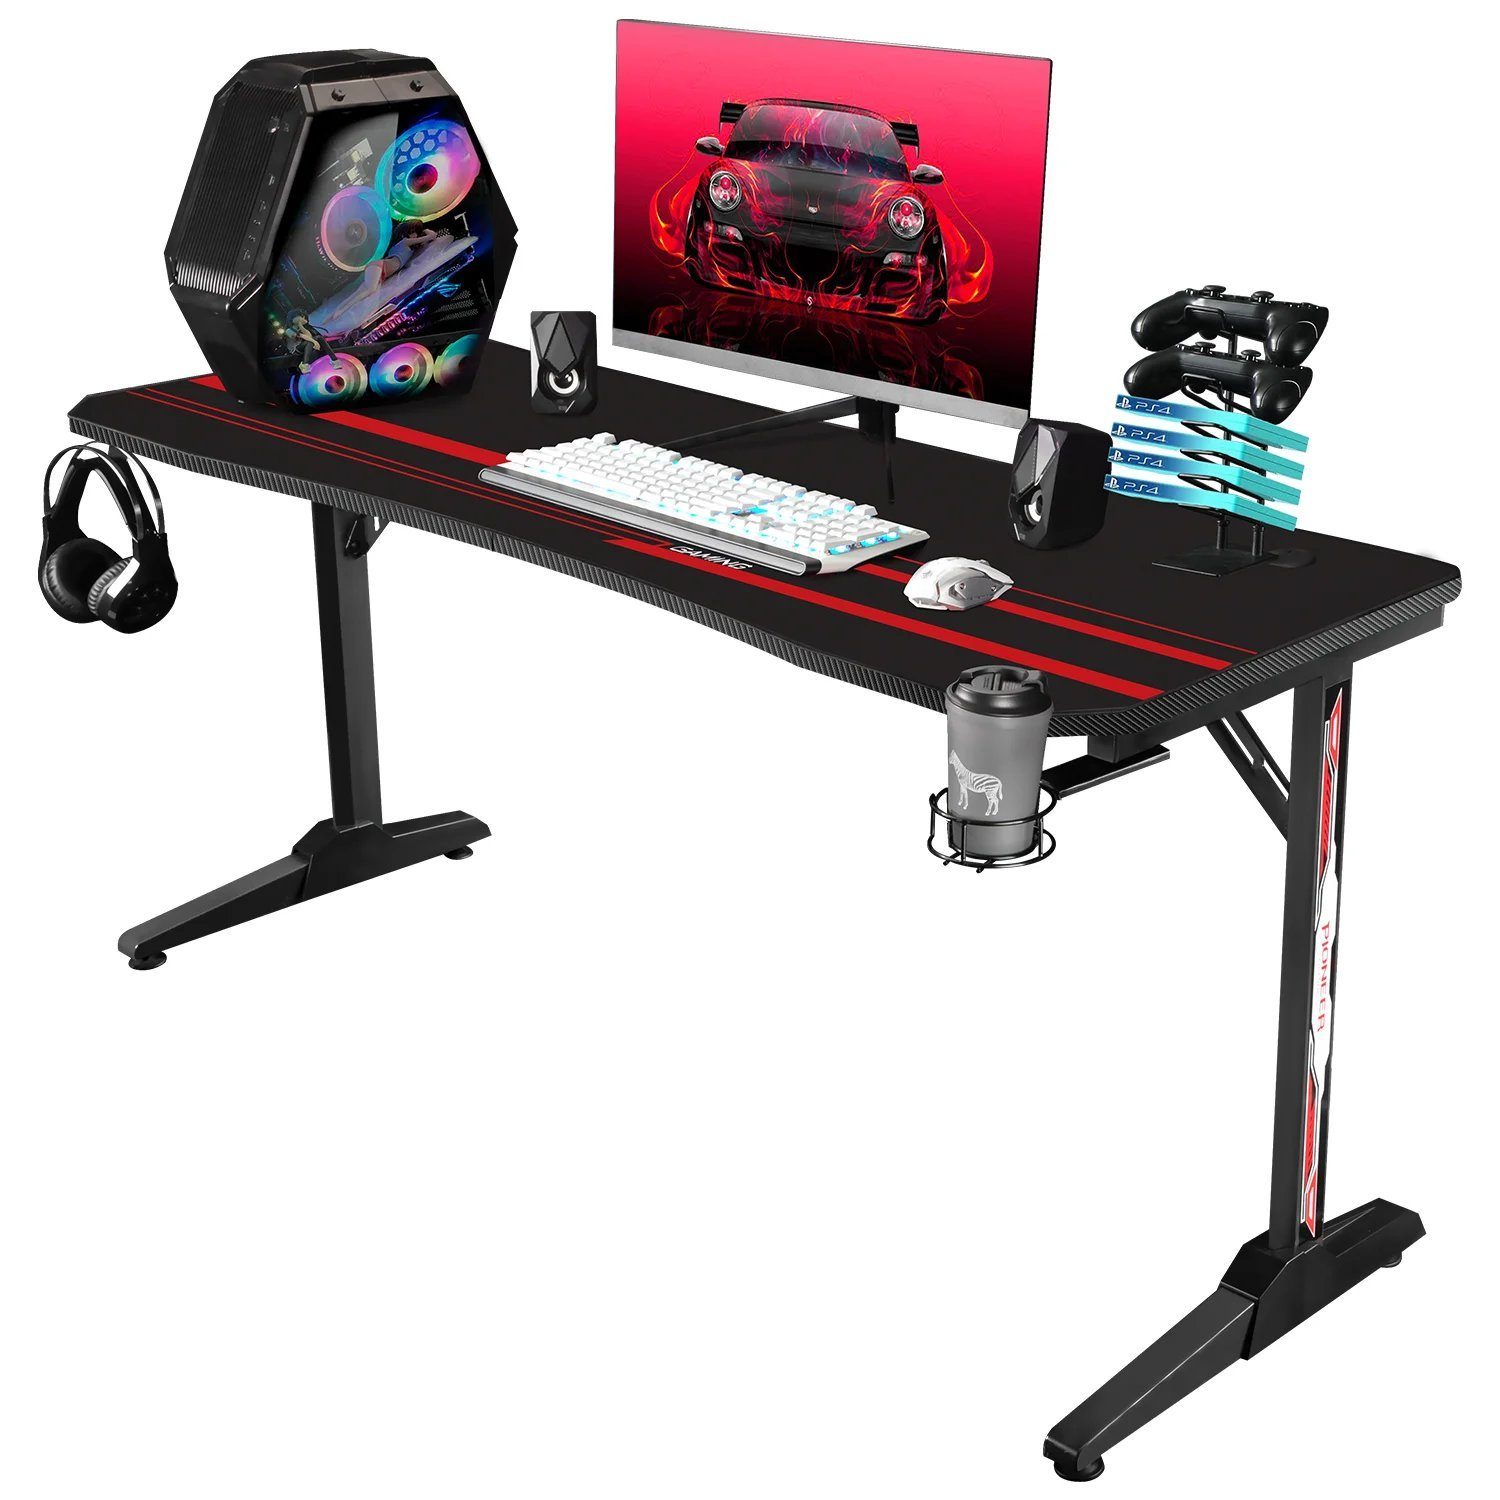 HOMALL Gamingtisch »160 cm Computer Schreibtisch Gamer Tisch for PC  Computertisch mit Getränkehalter und Kopfhörerhalter und Mauspad, Schwarz«  online kaufen | OTTO